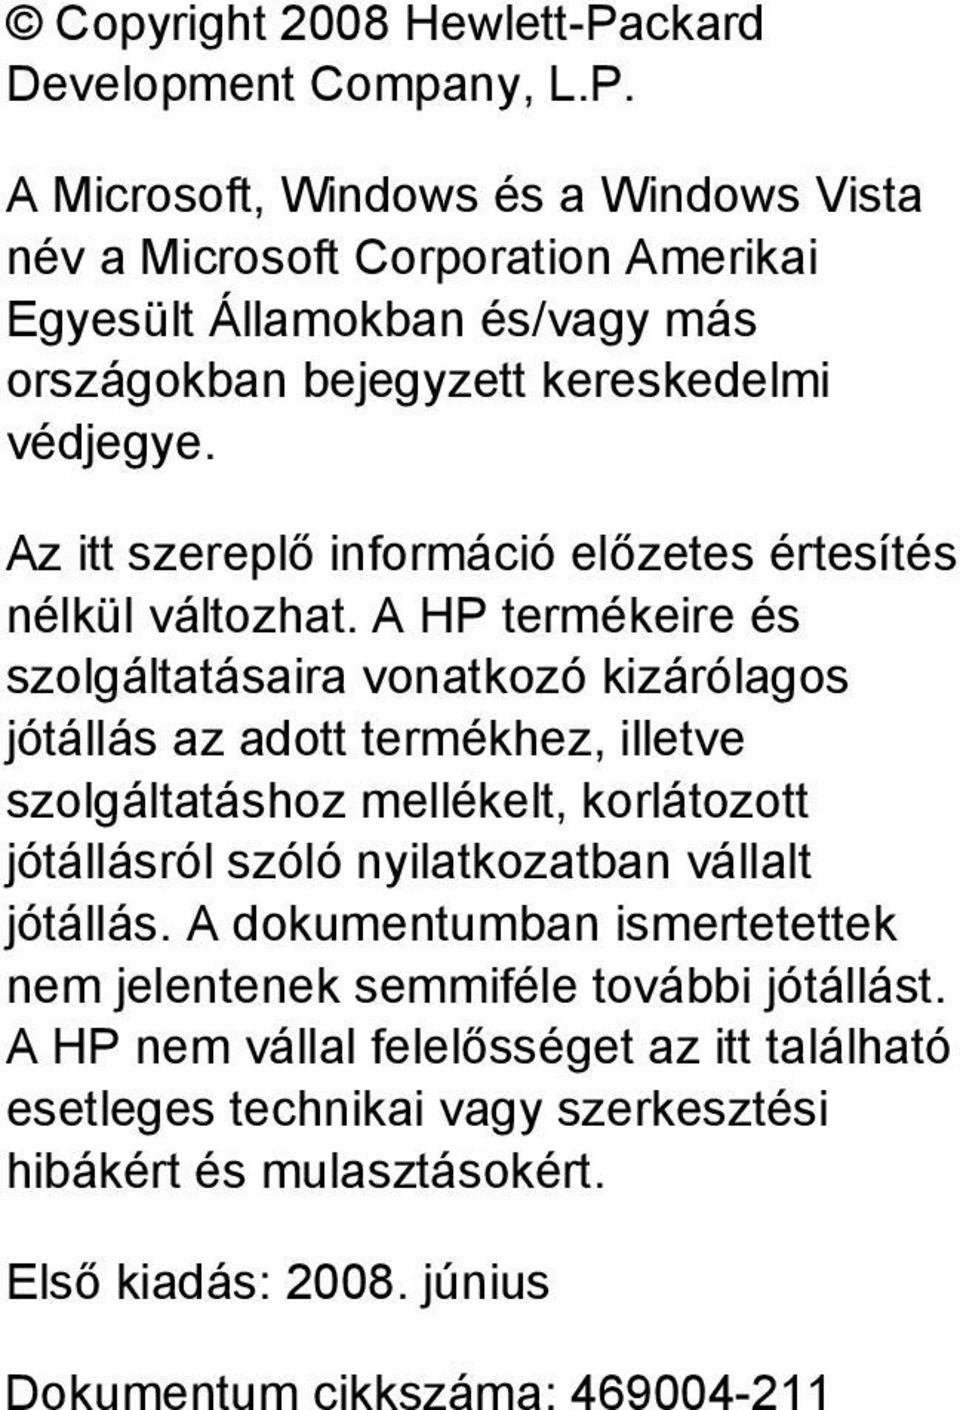 A Microsoft, Windows és a Windows Vista név a Microsoft Corporation Amerikai Egyesült Államokban és/vagy más országokban bejegyzett kereskedelmi védjegye.